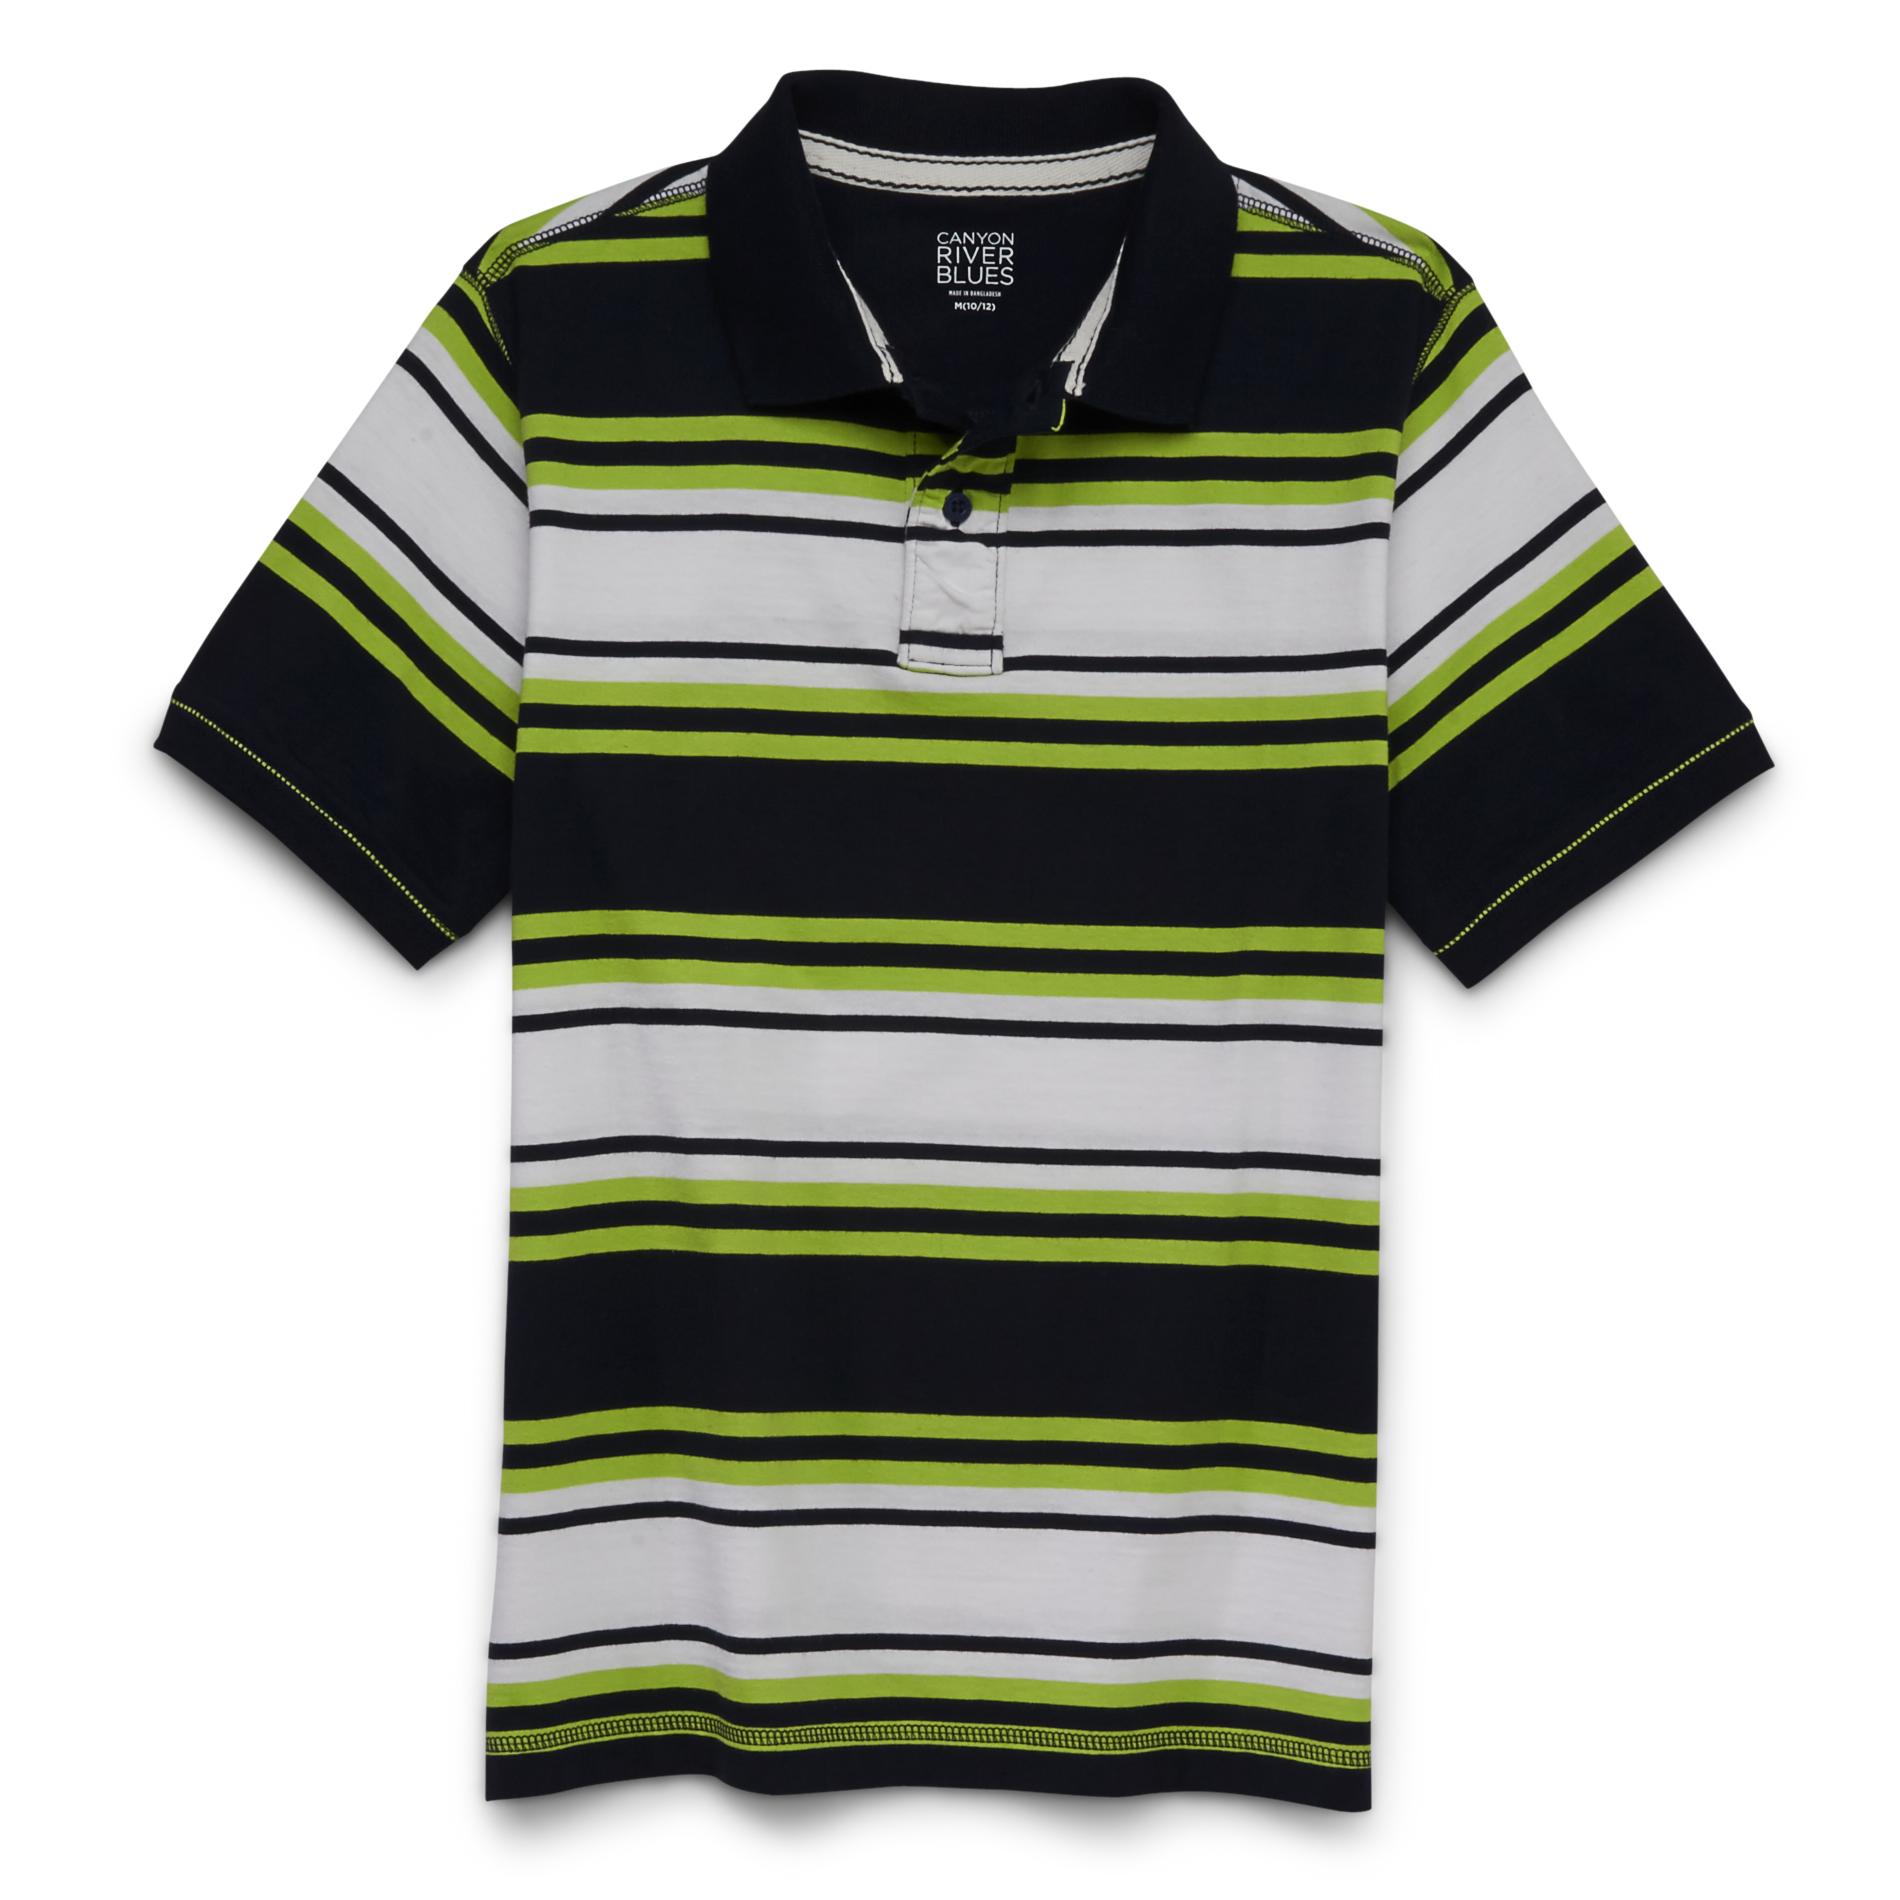 Canyon River Blues Boy's Polo Shirt - Striped